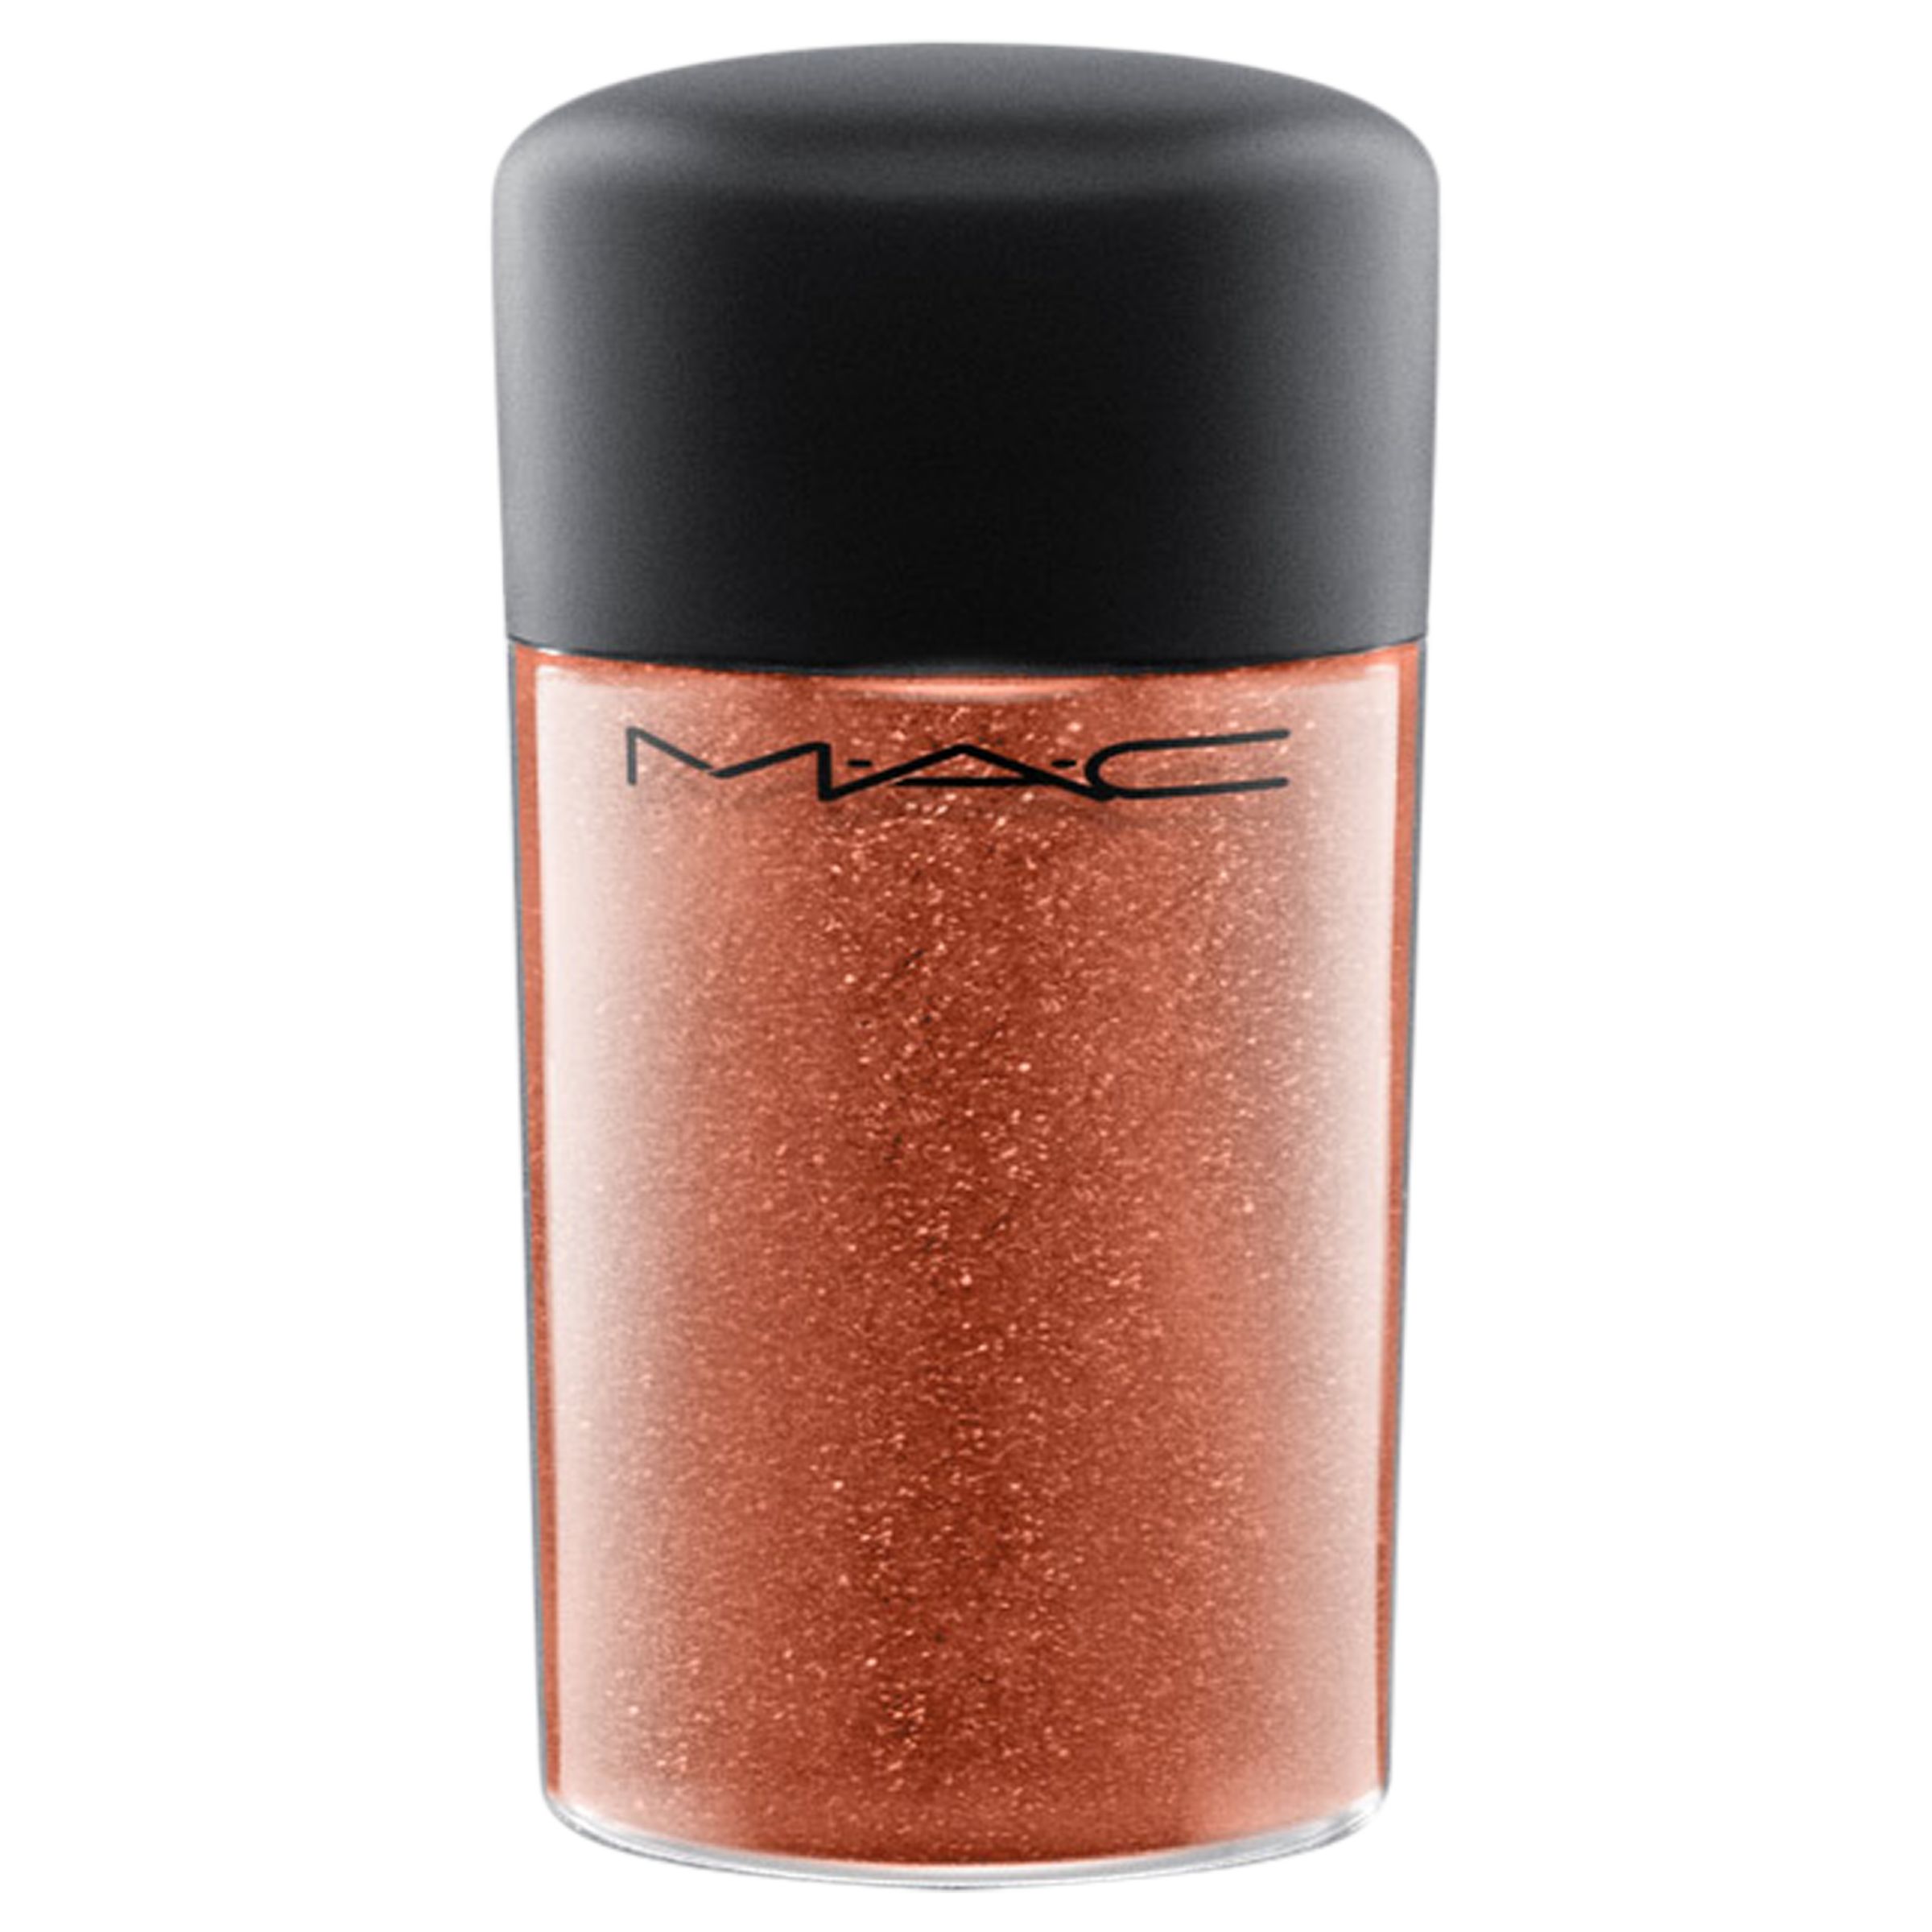 MAC Glitter - Galactic Glitter, Copper 1